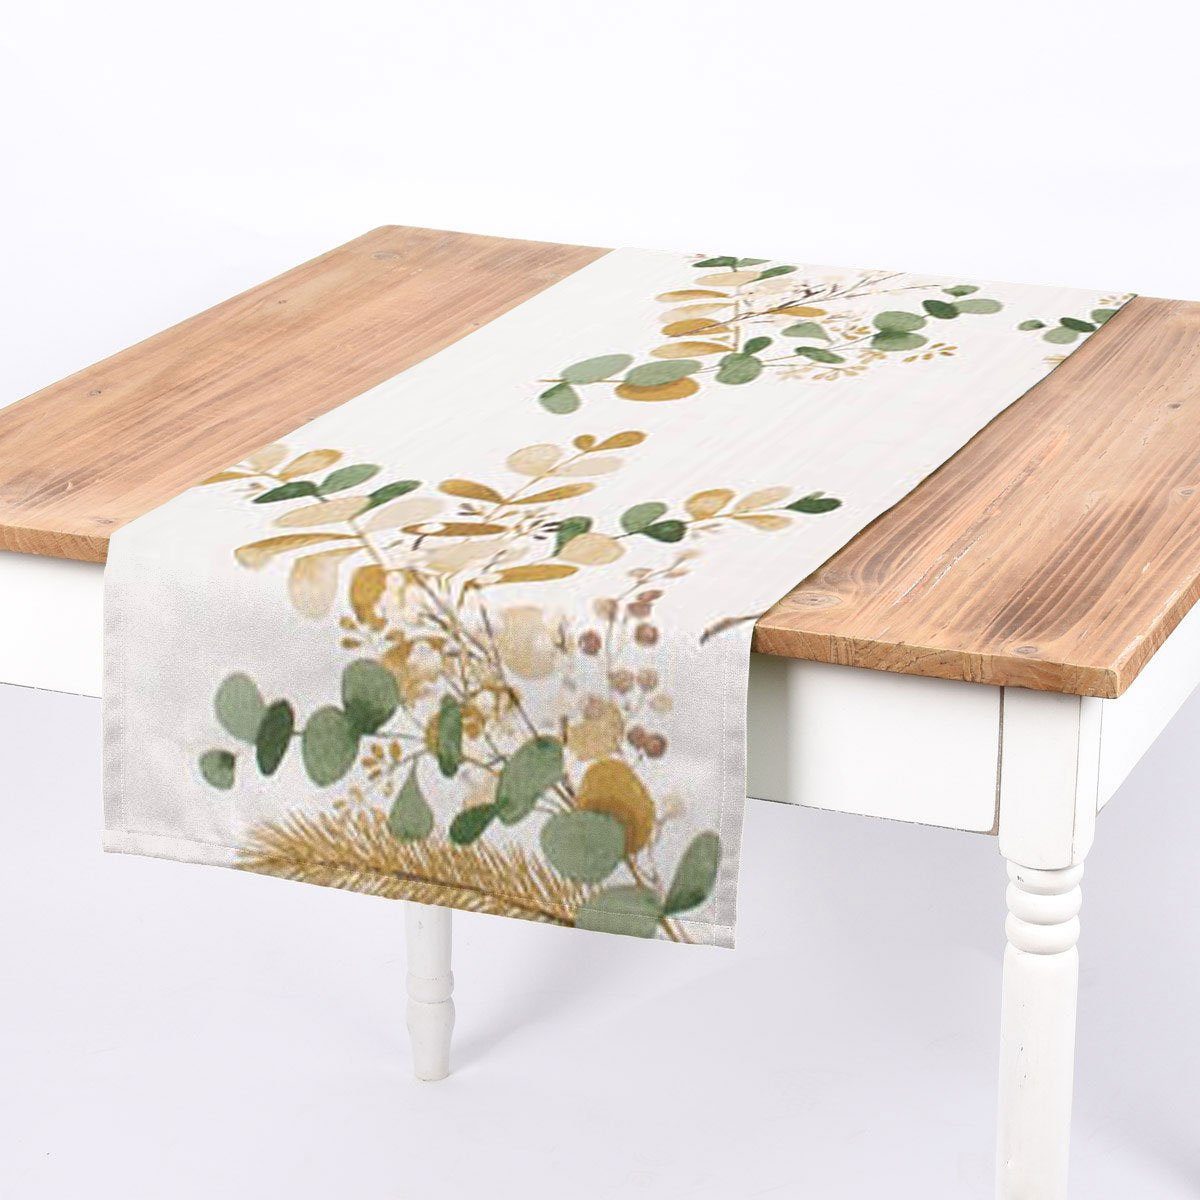 SCHÖNER LEBEN. Tischläufer SCHÖNER LEBEN. Tischläufer Mistel Eukalyptus Tanne senfgelb grün, handmade | Tischläufer